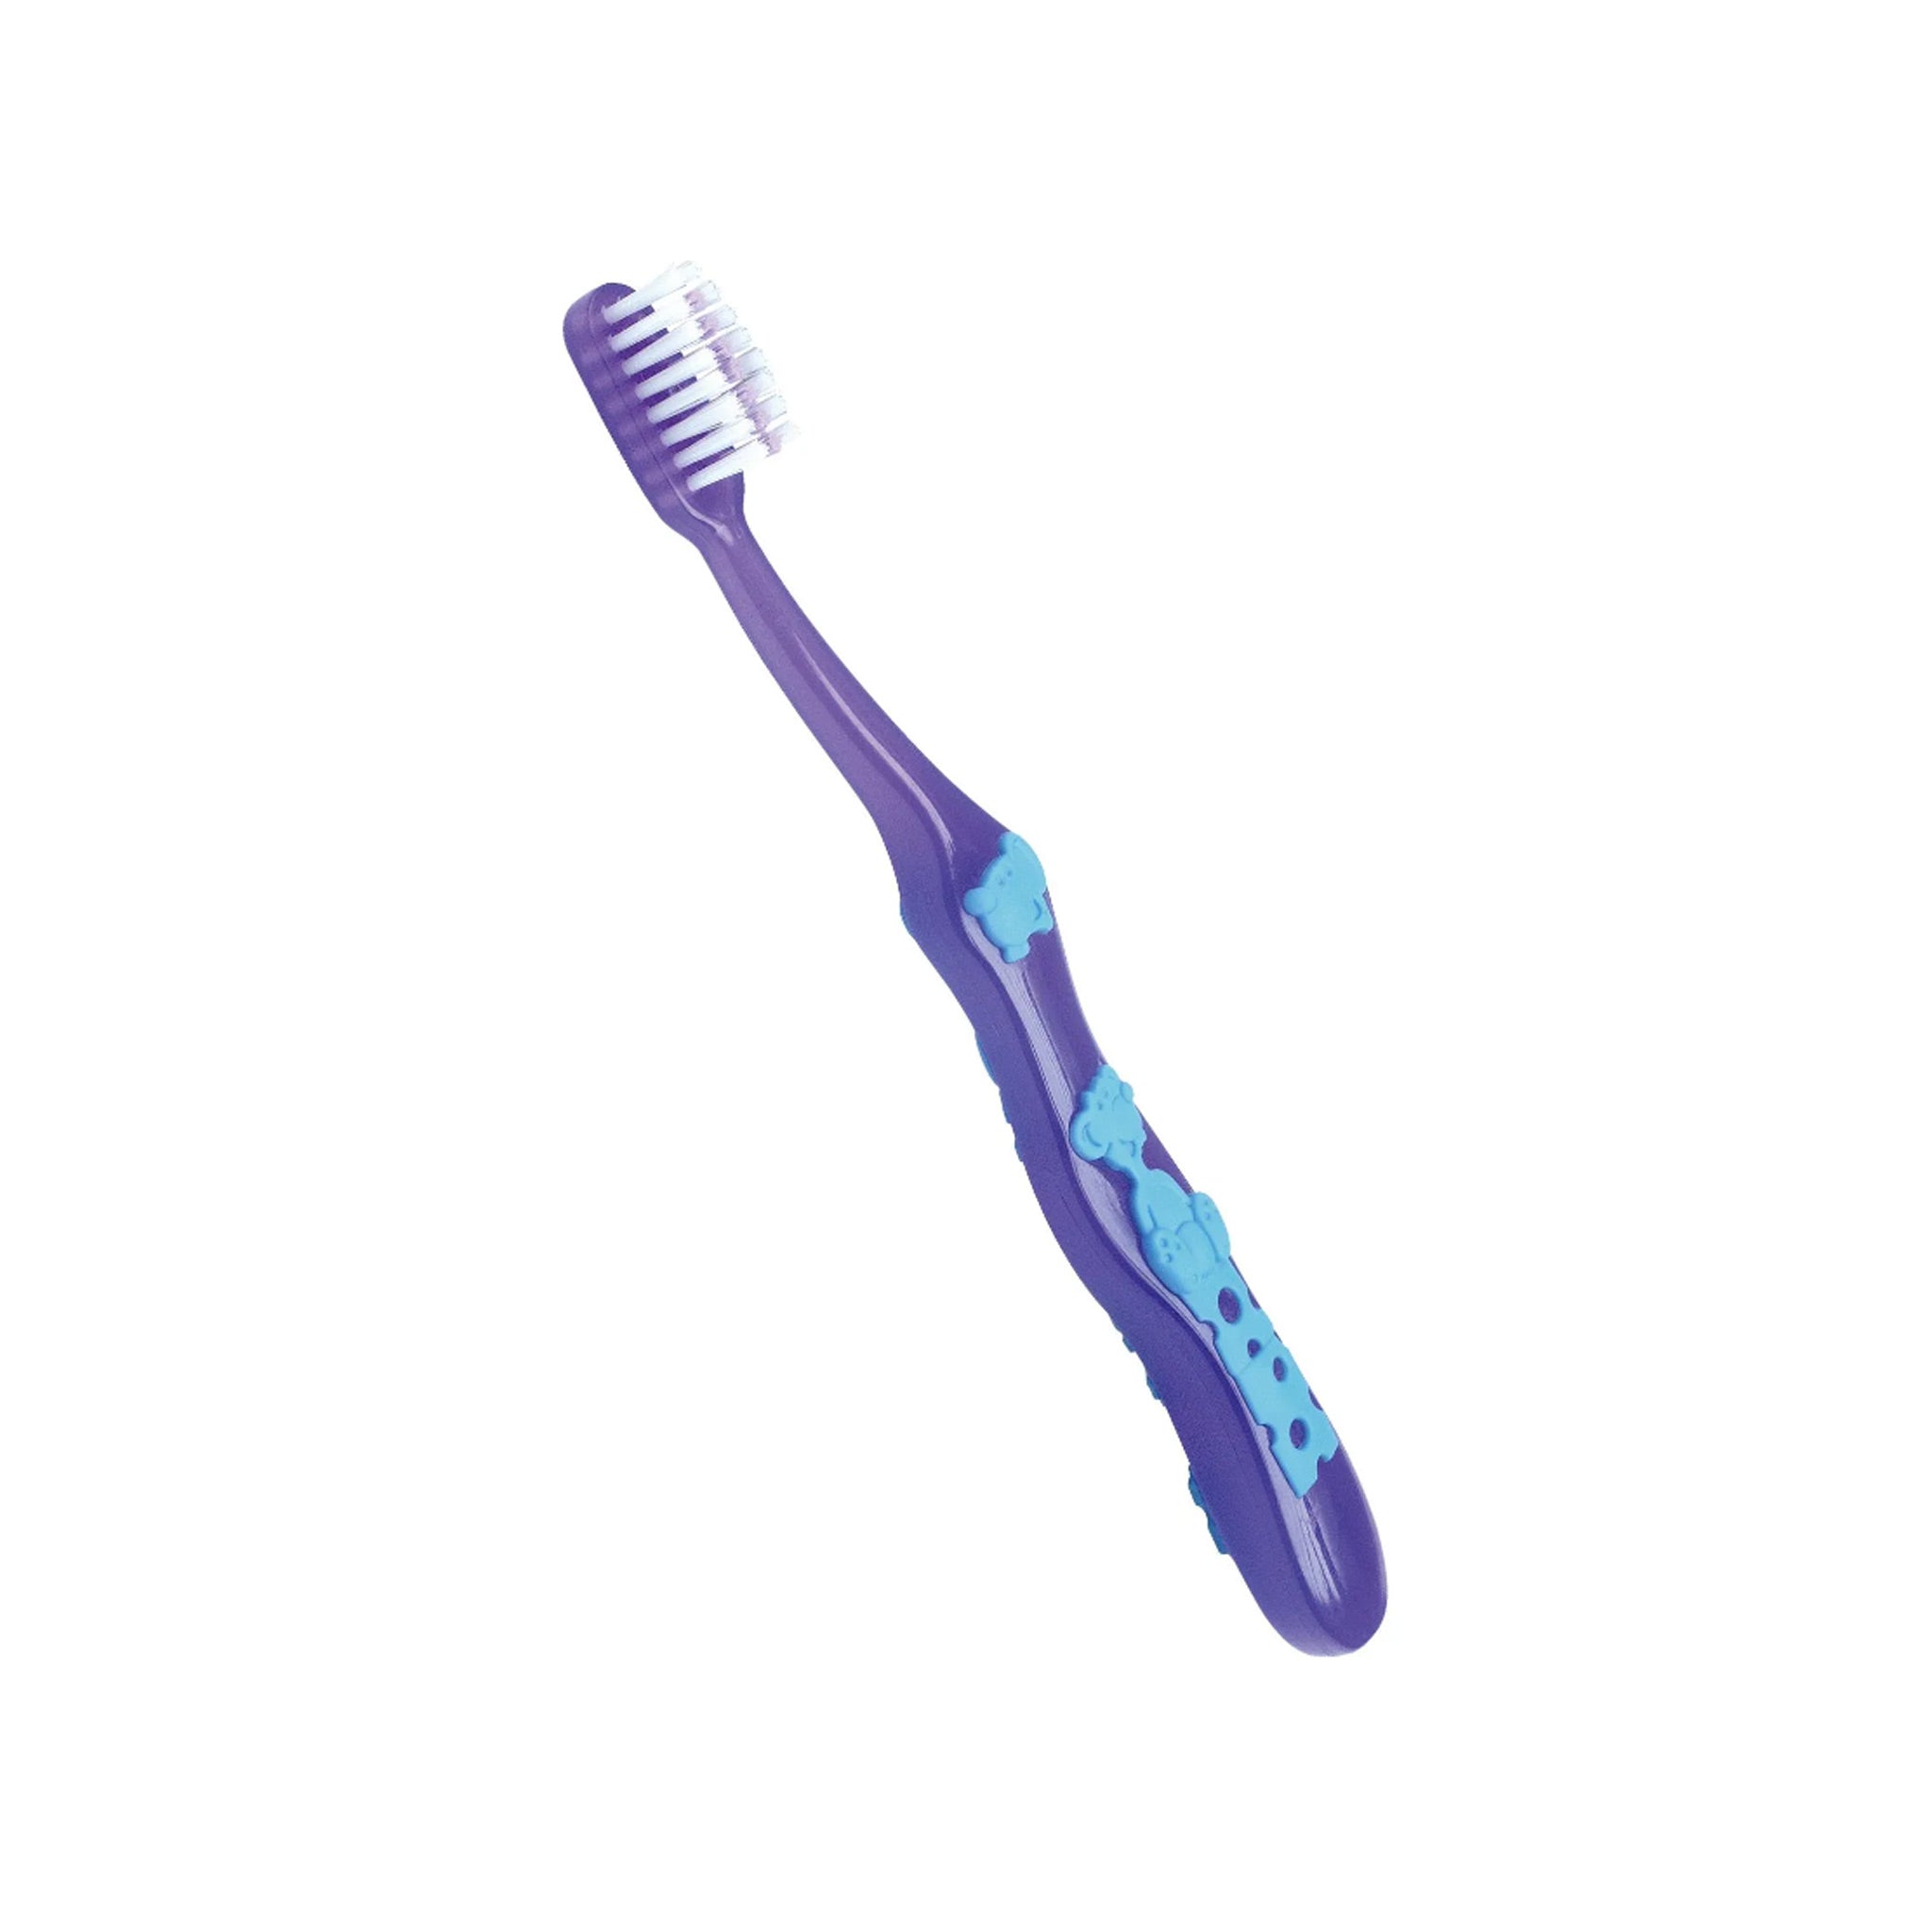 Children's toothbrush 2-6 years